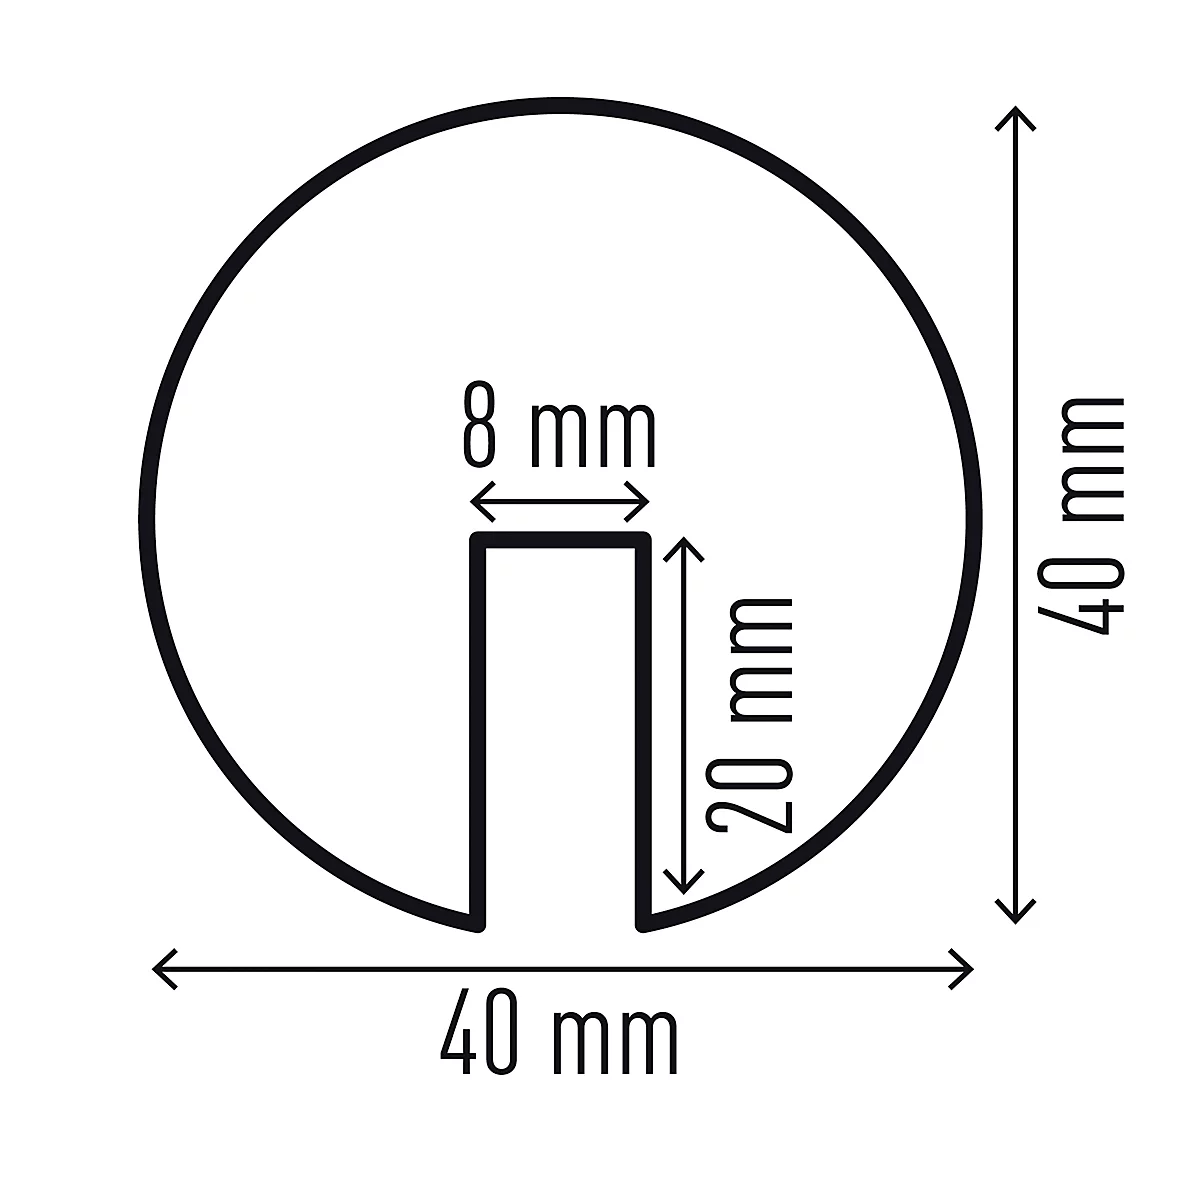 Kantenschutzprofil Durable E8R, rund, selbstklebend, für Innen- & Außenbereich, Aussparung 8 mm, L 1000 mm, PU-Schaum, gelb/schwarz